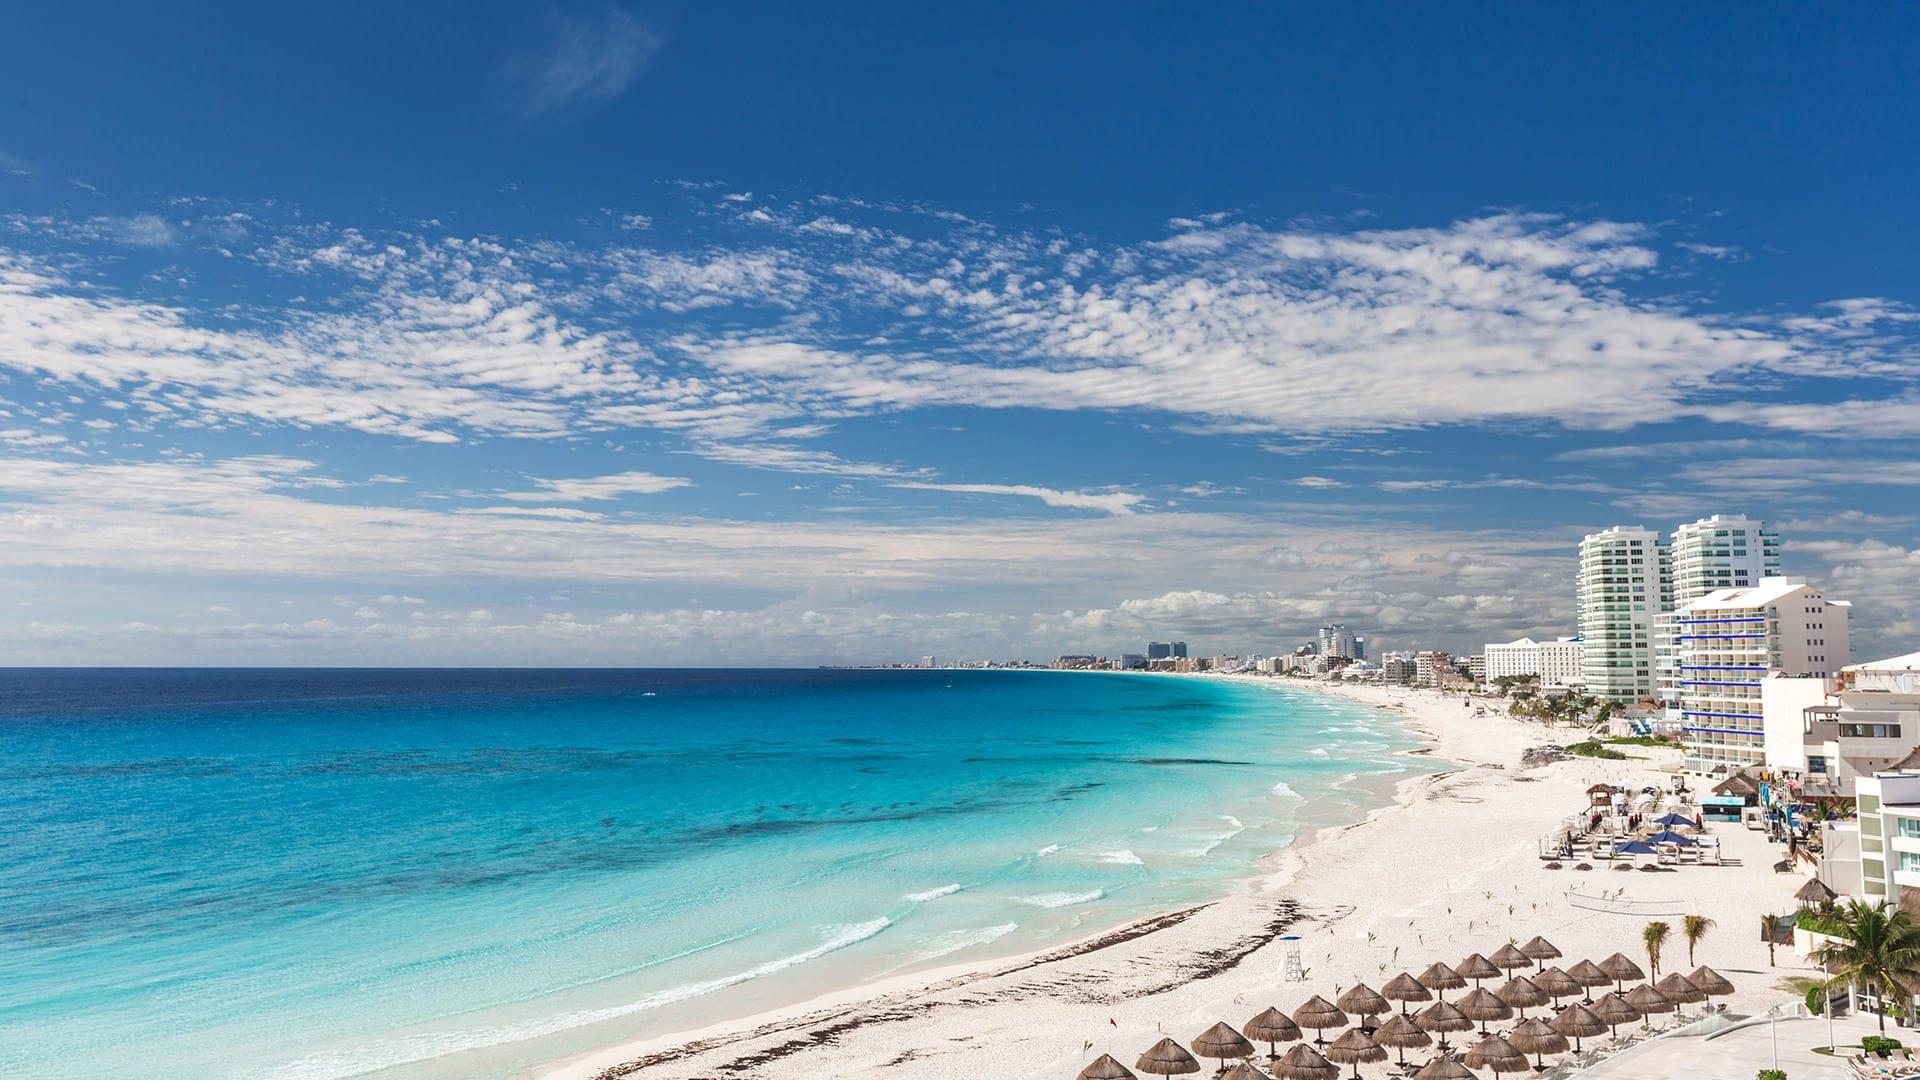 Destination: Maya & Cancun